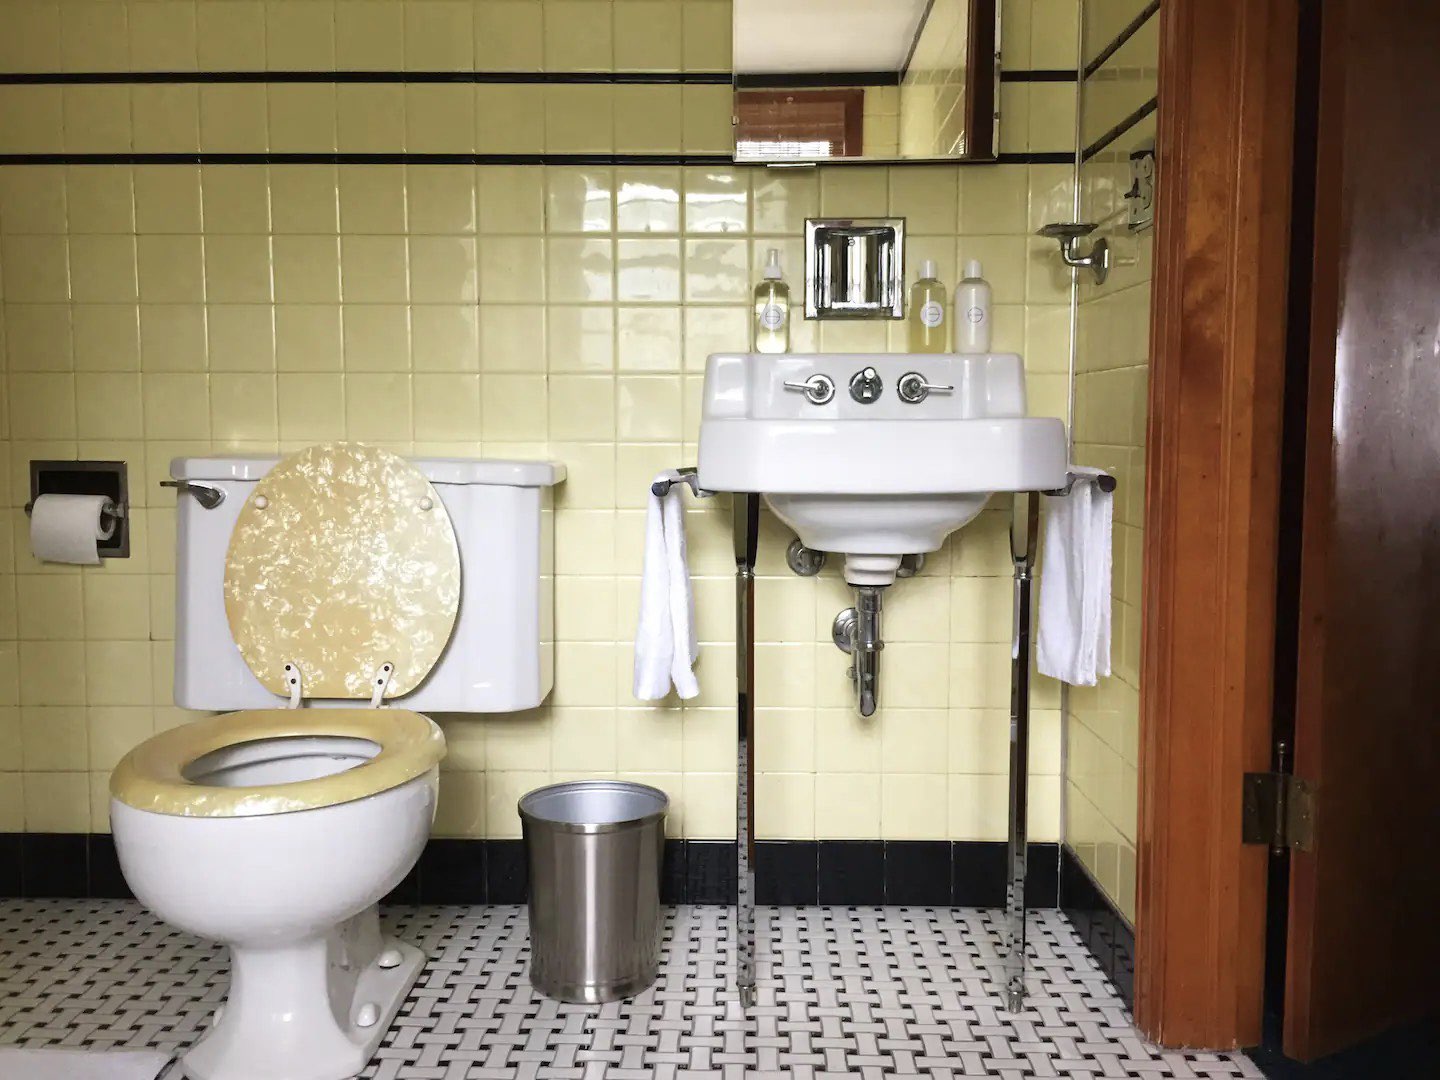 visite deco appartement mid century modern salle de bain vintage jaune pastel noir blanc sol sanitaire d'époque faïence blanche chromé